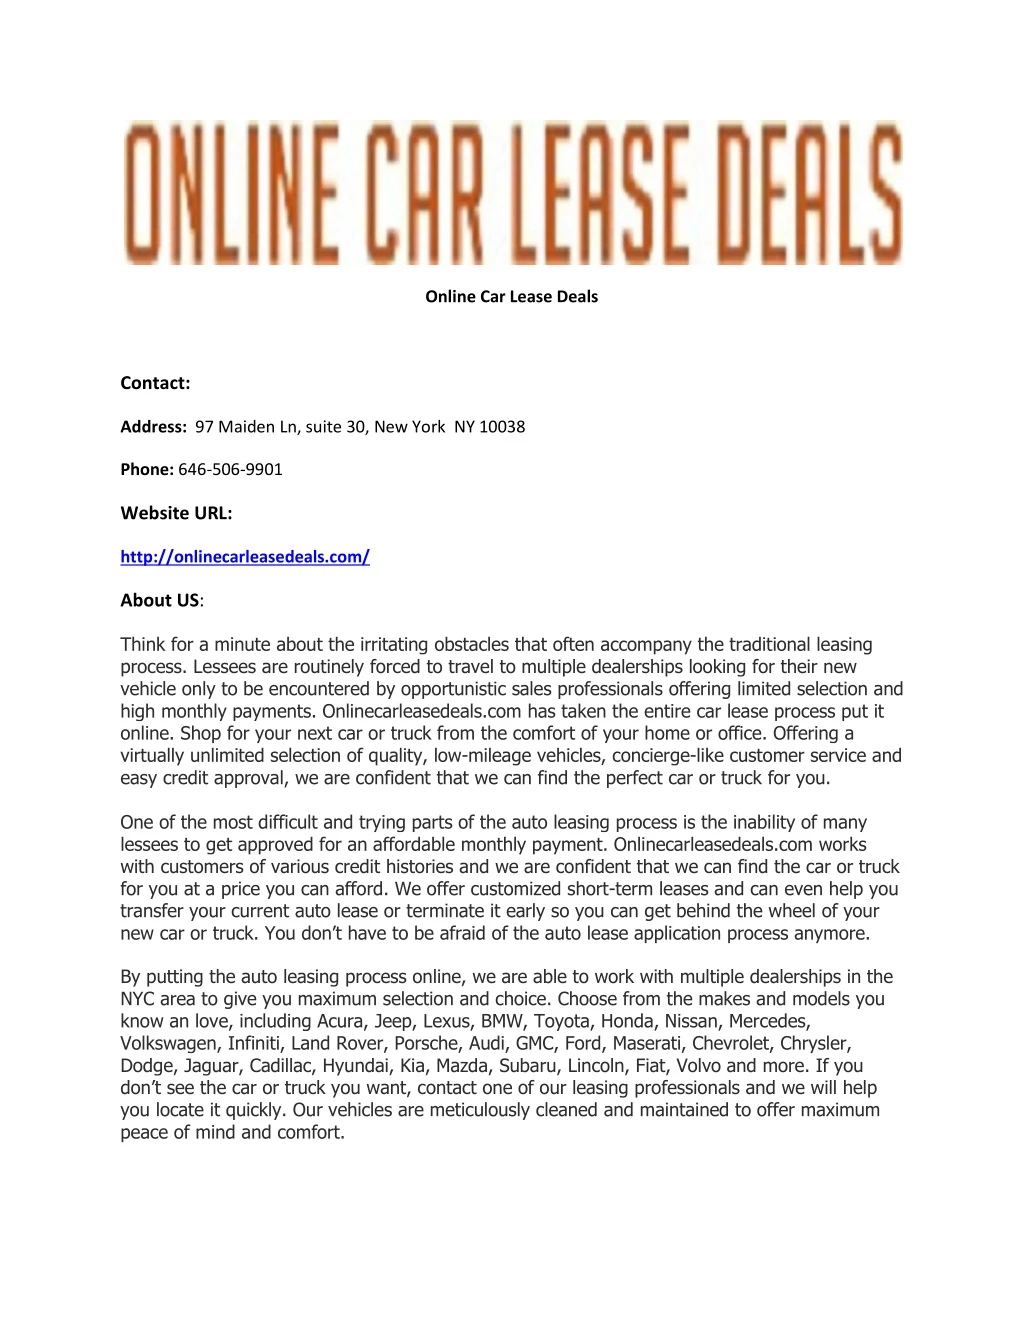 online car lease deals